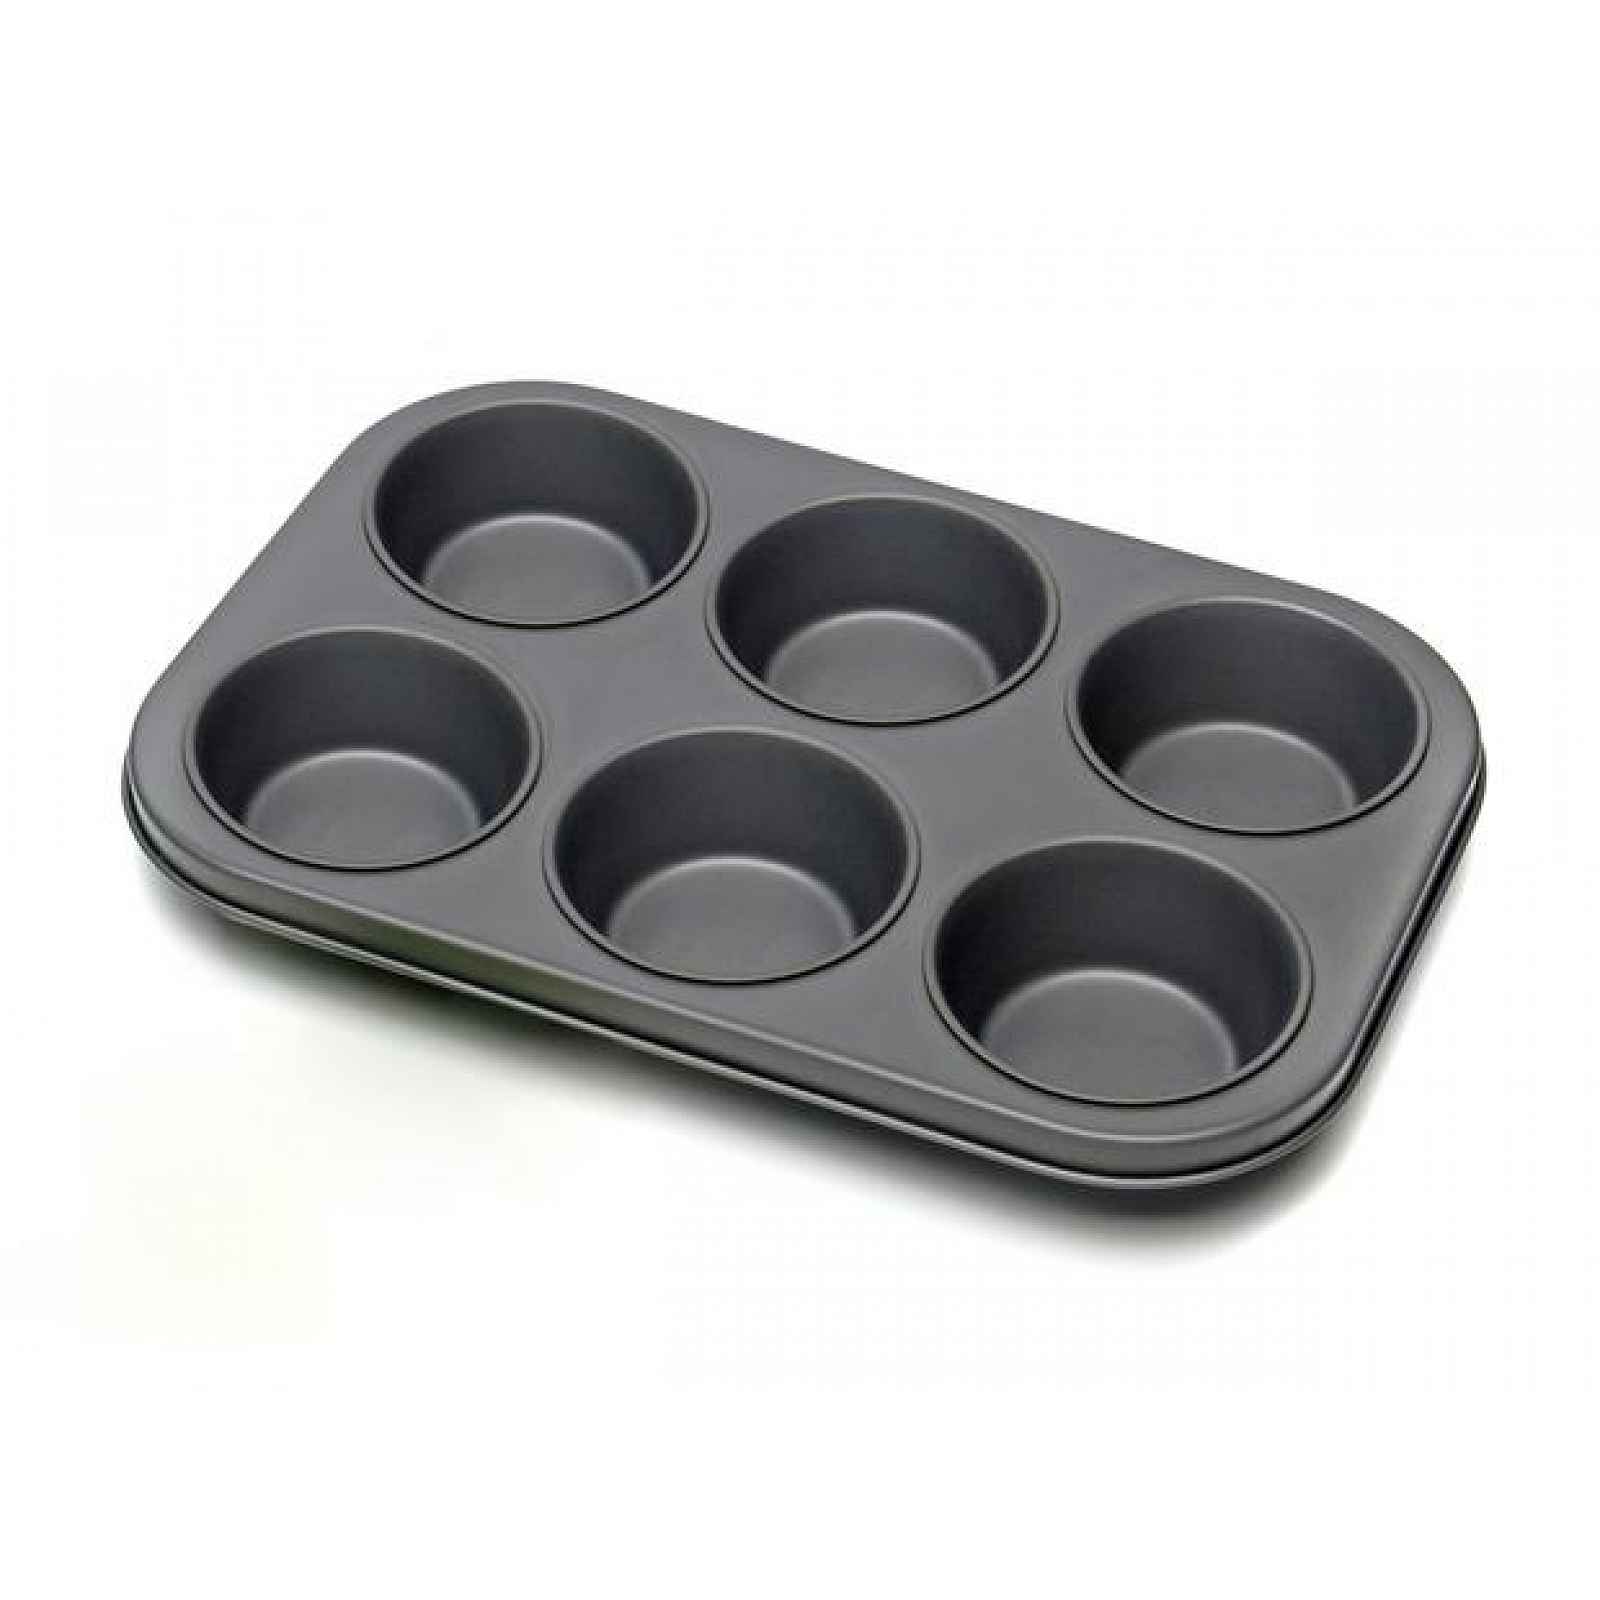 TORO Forma na muffiny, 6 ks výplně, 18 x 26 x 3, 4 cm